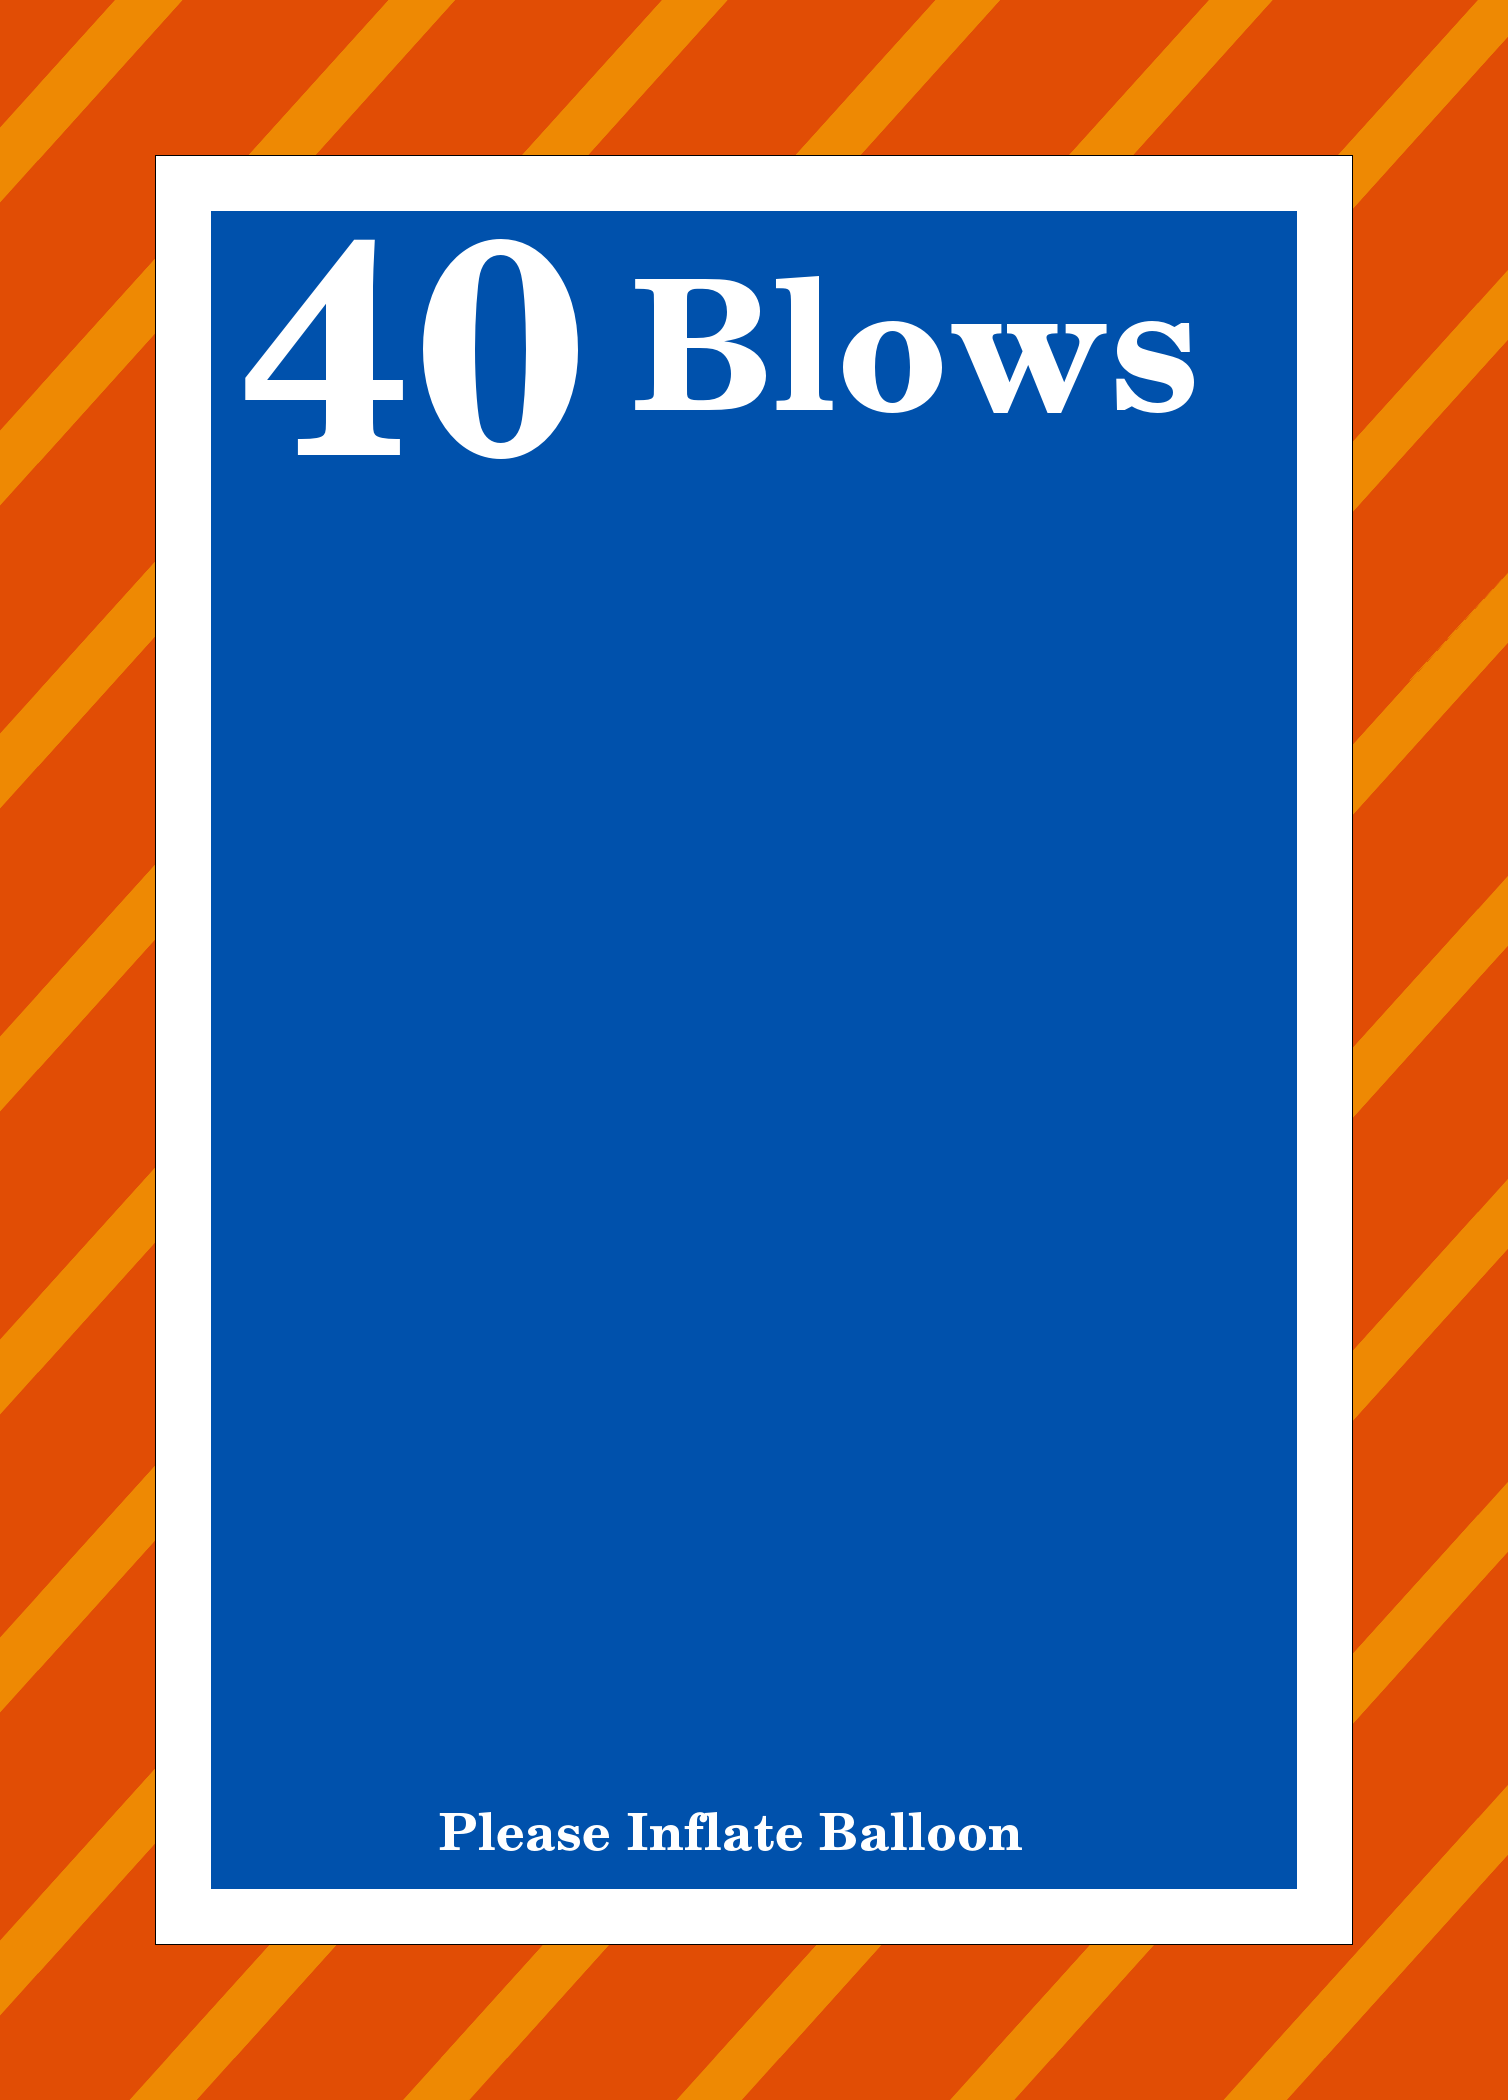 40 Blows Balloon Invitation